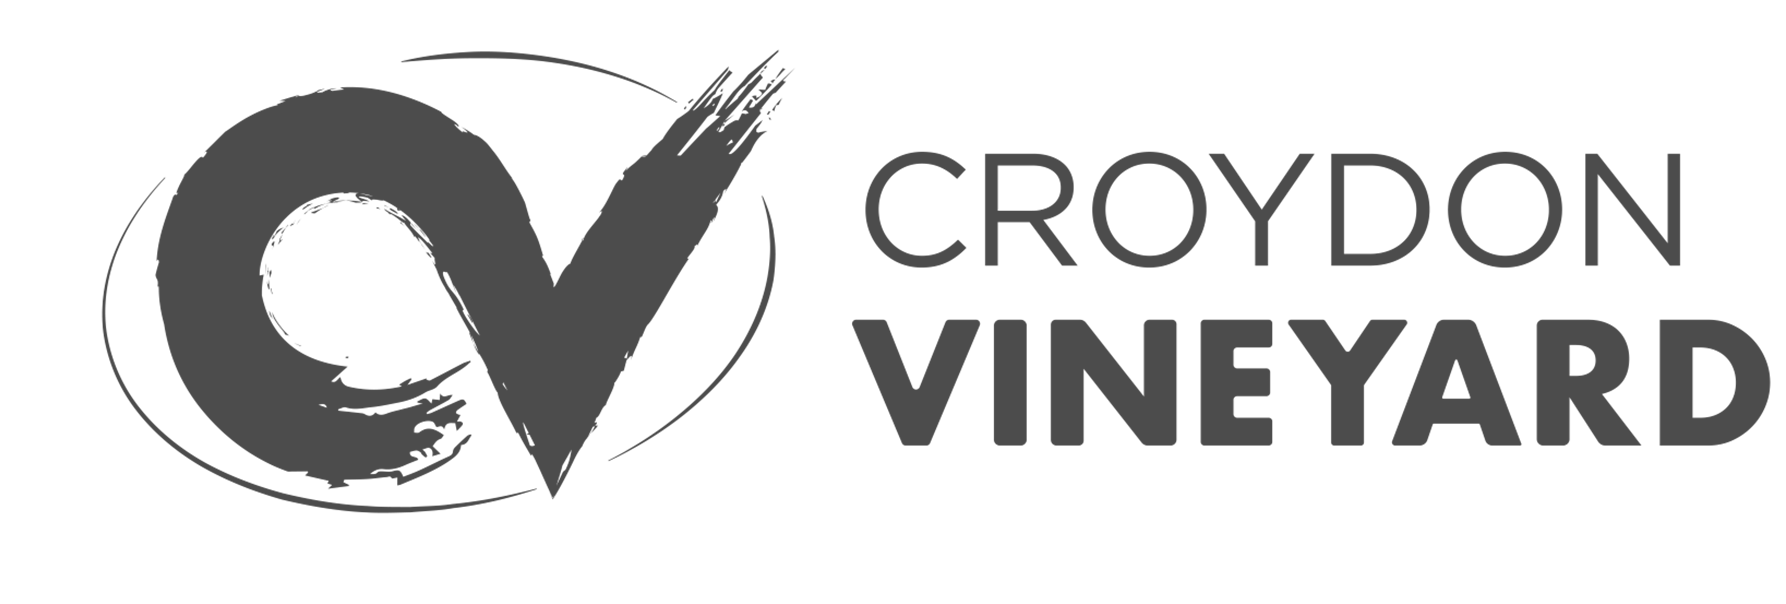 Croydon Vineyard